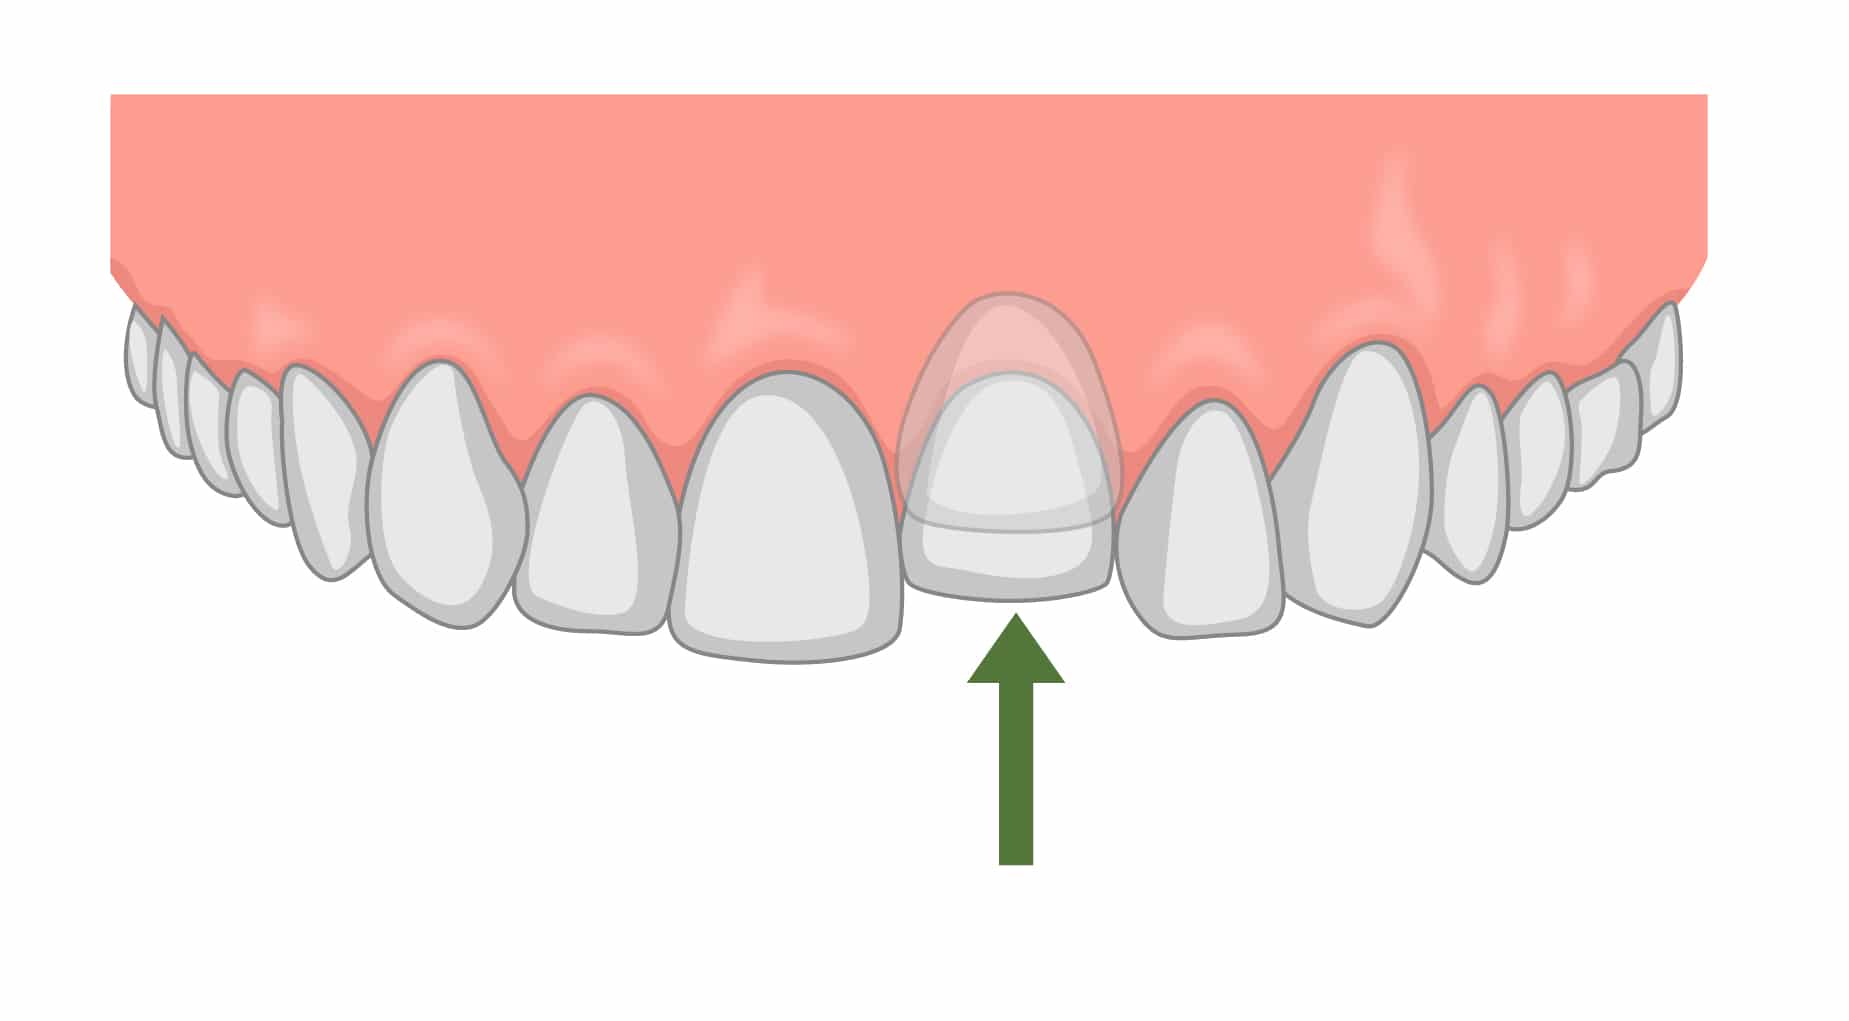 کلینیک دندانپزشکی دریای نور